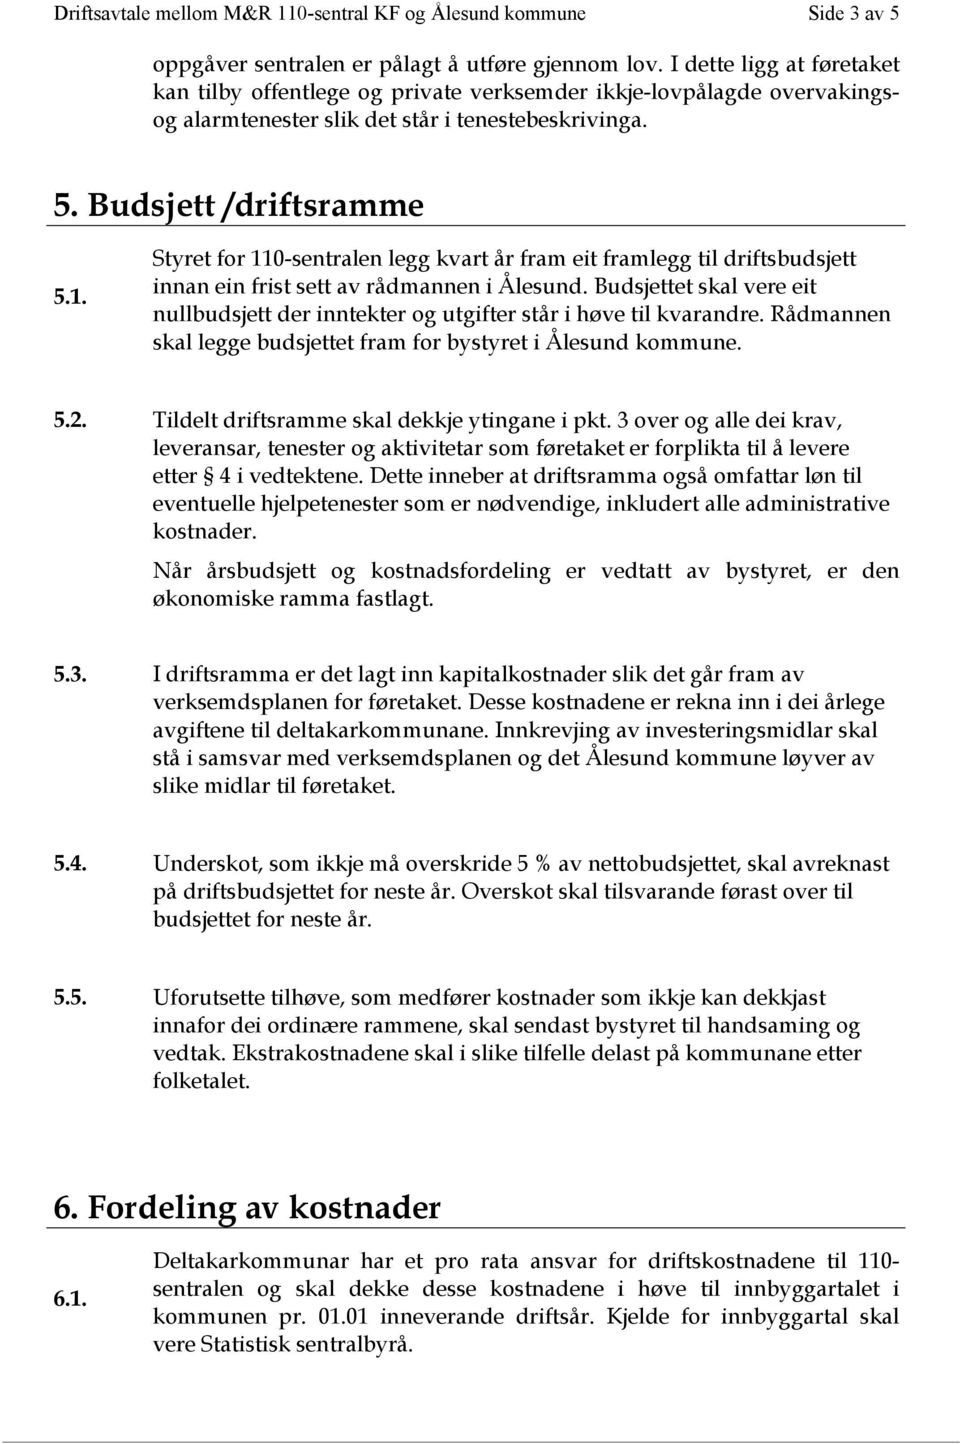 Styret for 110-sentralen legg kvart år fram eit framlegg til driftsbudsjett innan ein frist sett av rådmannen i Ålesund.